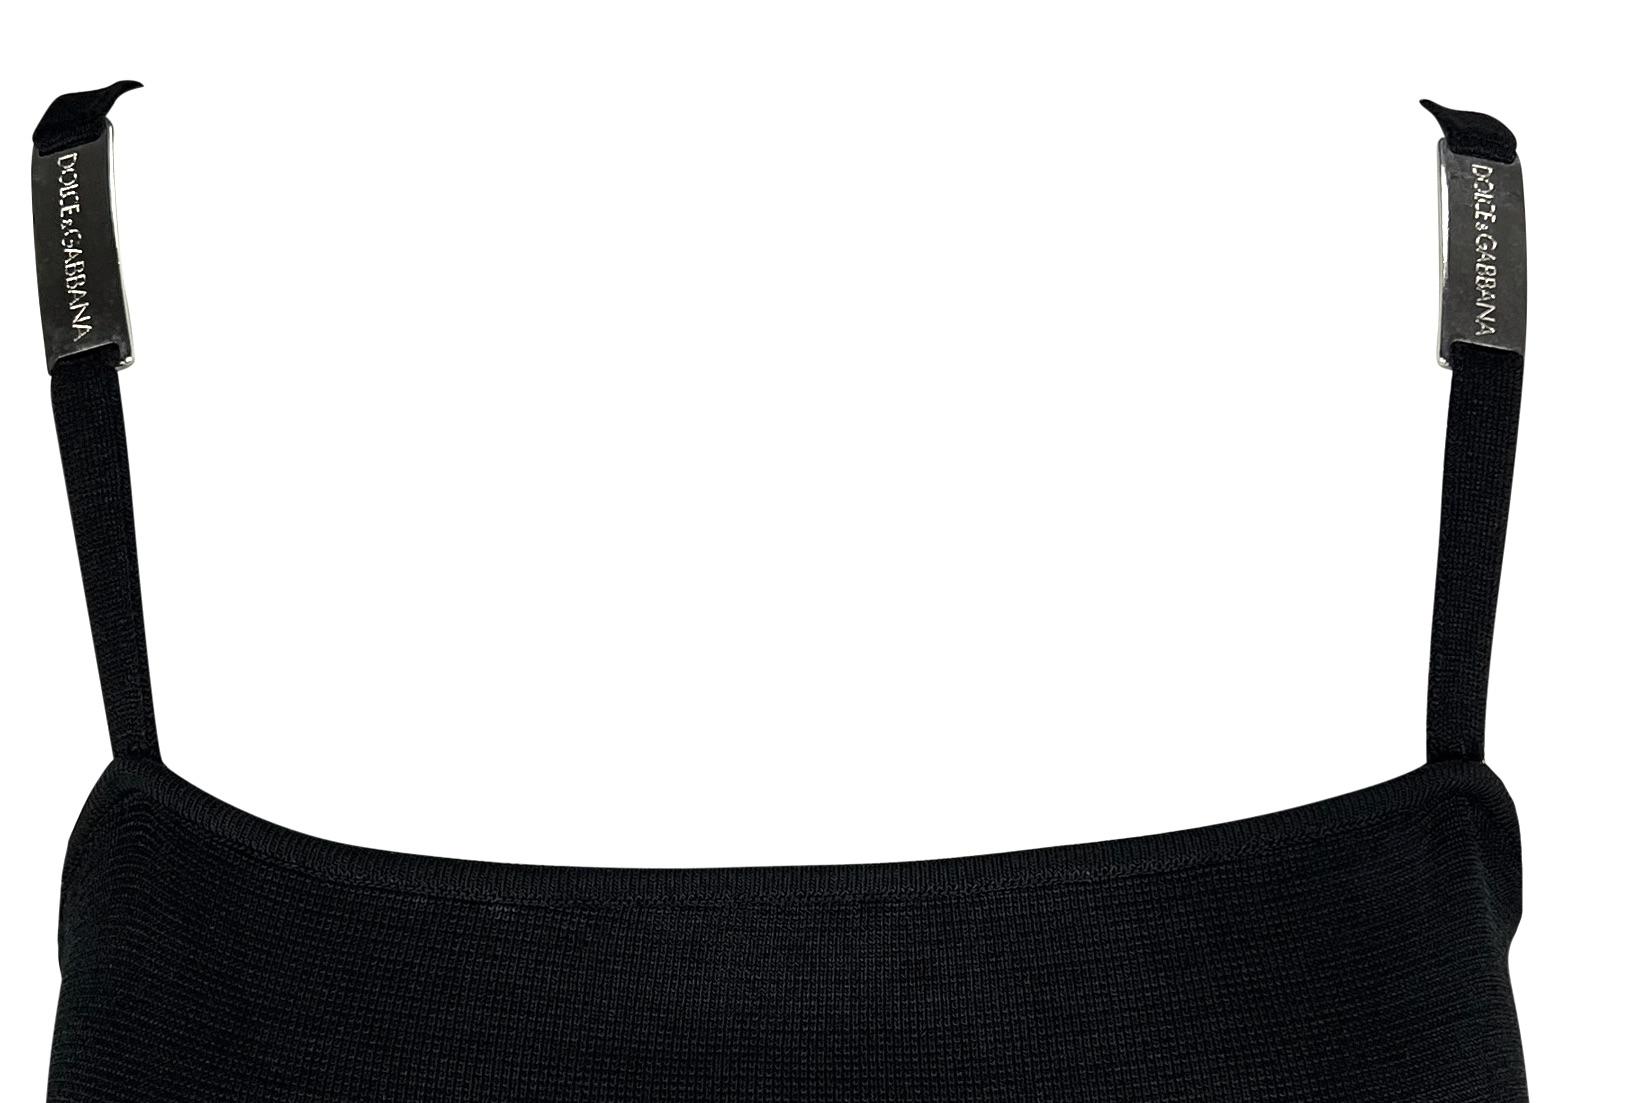 Dieses Dolce & Gabbana-Minikleid aus den 1990er-Jahren ist aus schwarzem Strick gefertigt und im Schlupfstil gehalten. Dieses figurbetonte Kleid ist an den Trägern mit metallischen Markenakzenten verziert. 

Ungefähre Maße:
Größe - 42IT
Brustumfang: